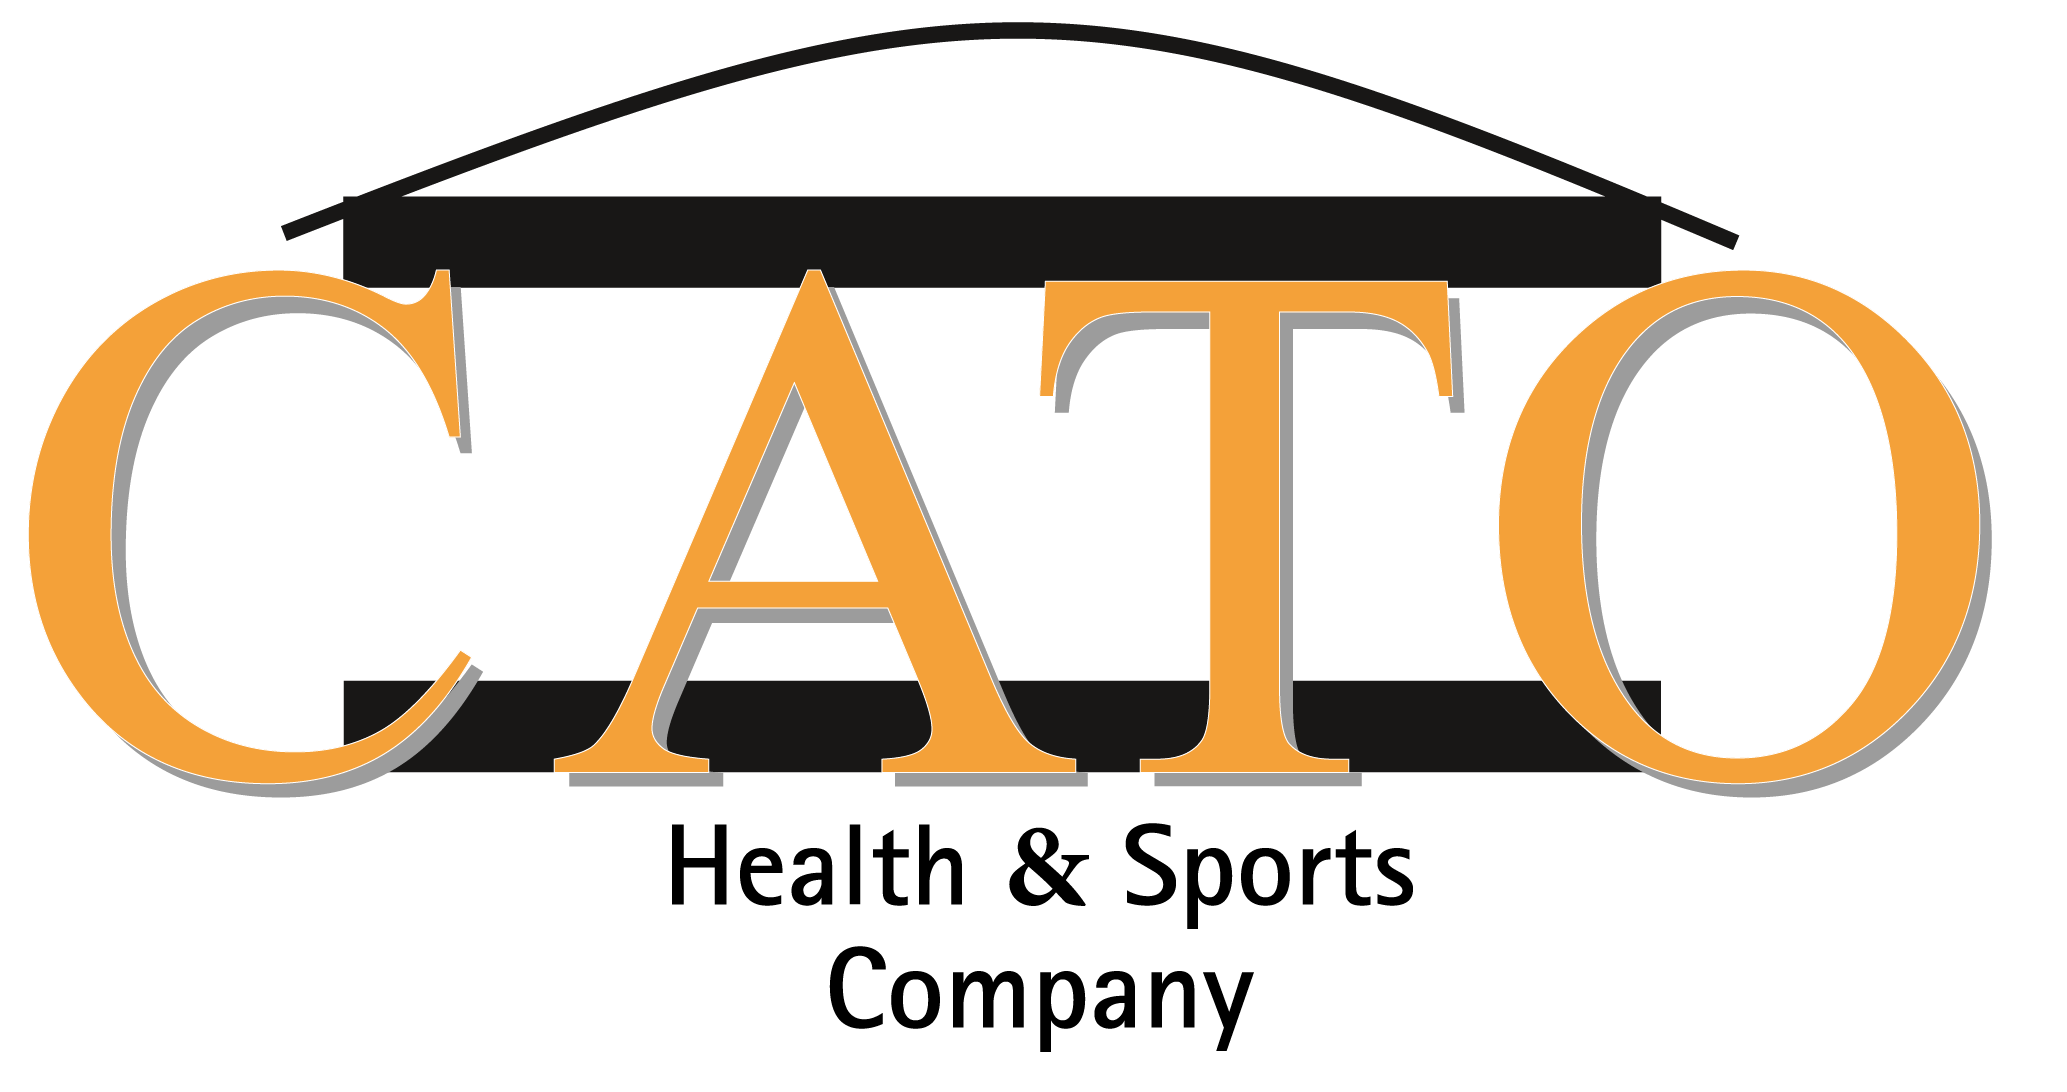 CATO Health & Sports Company Logo